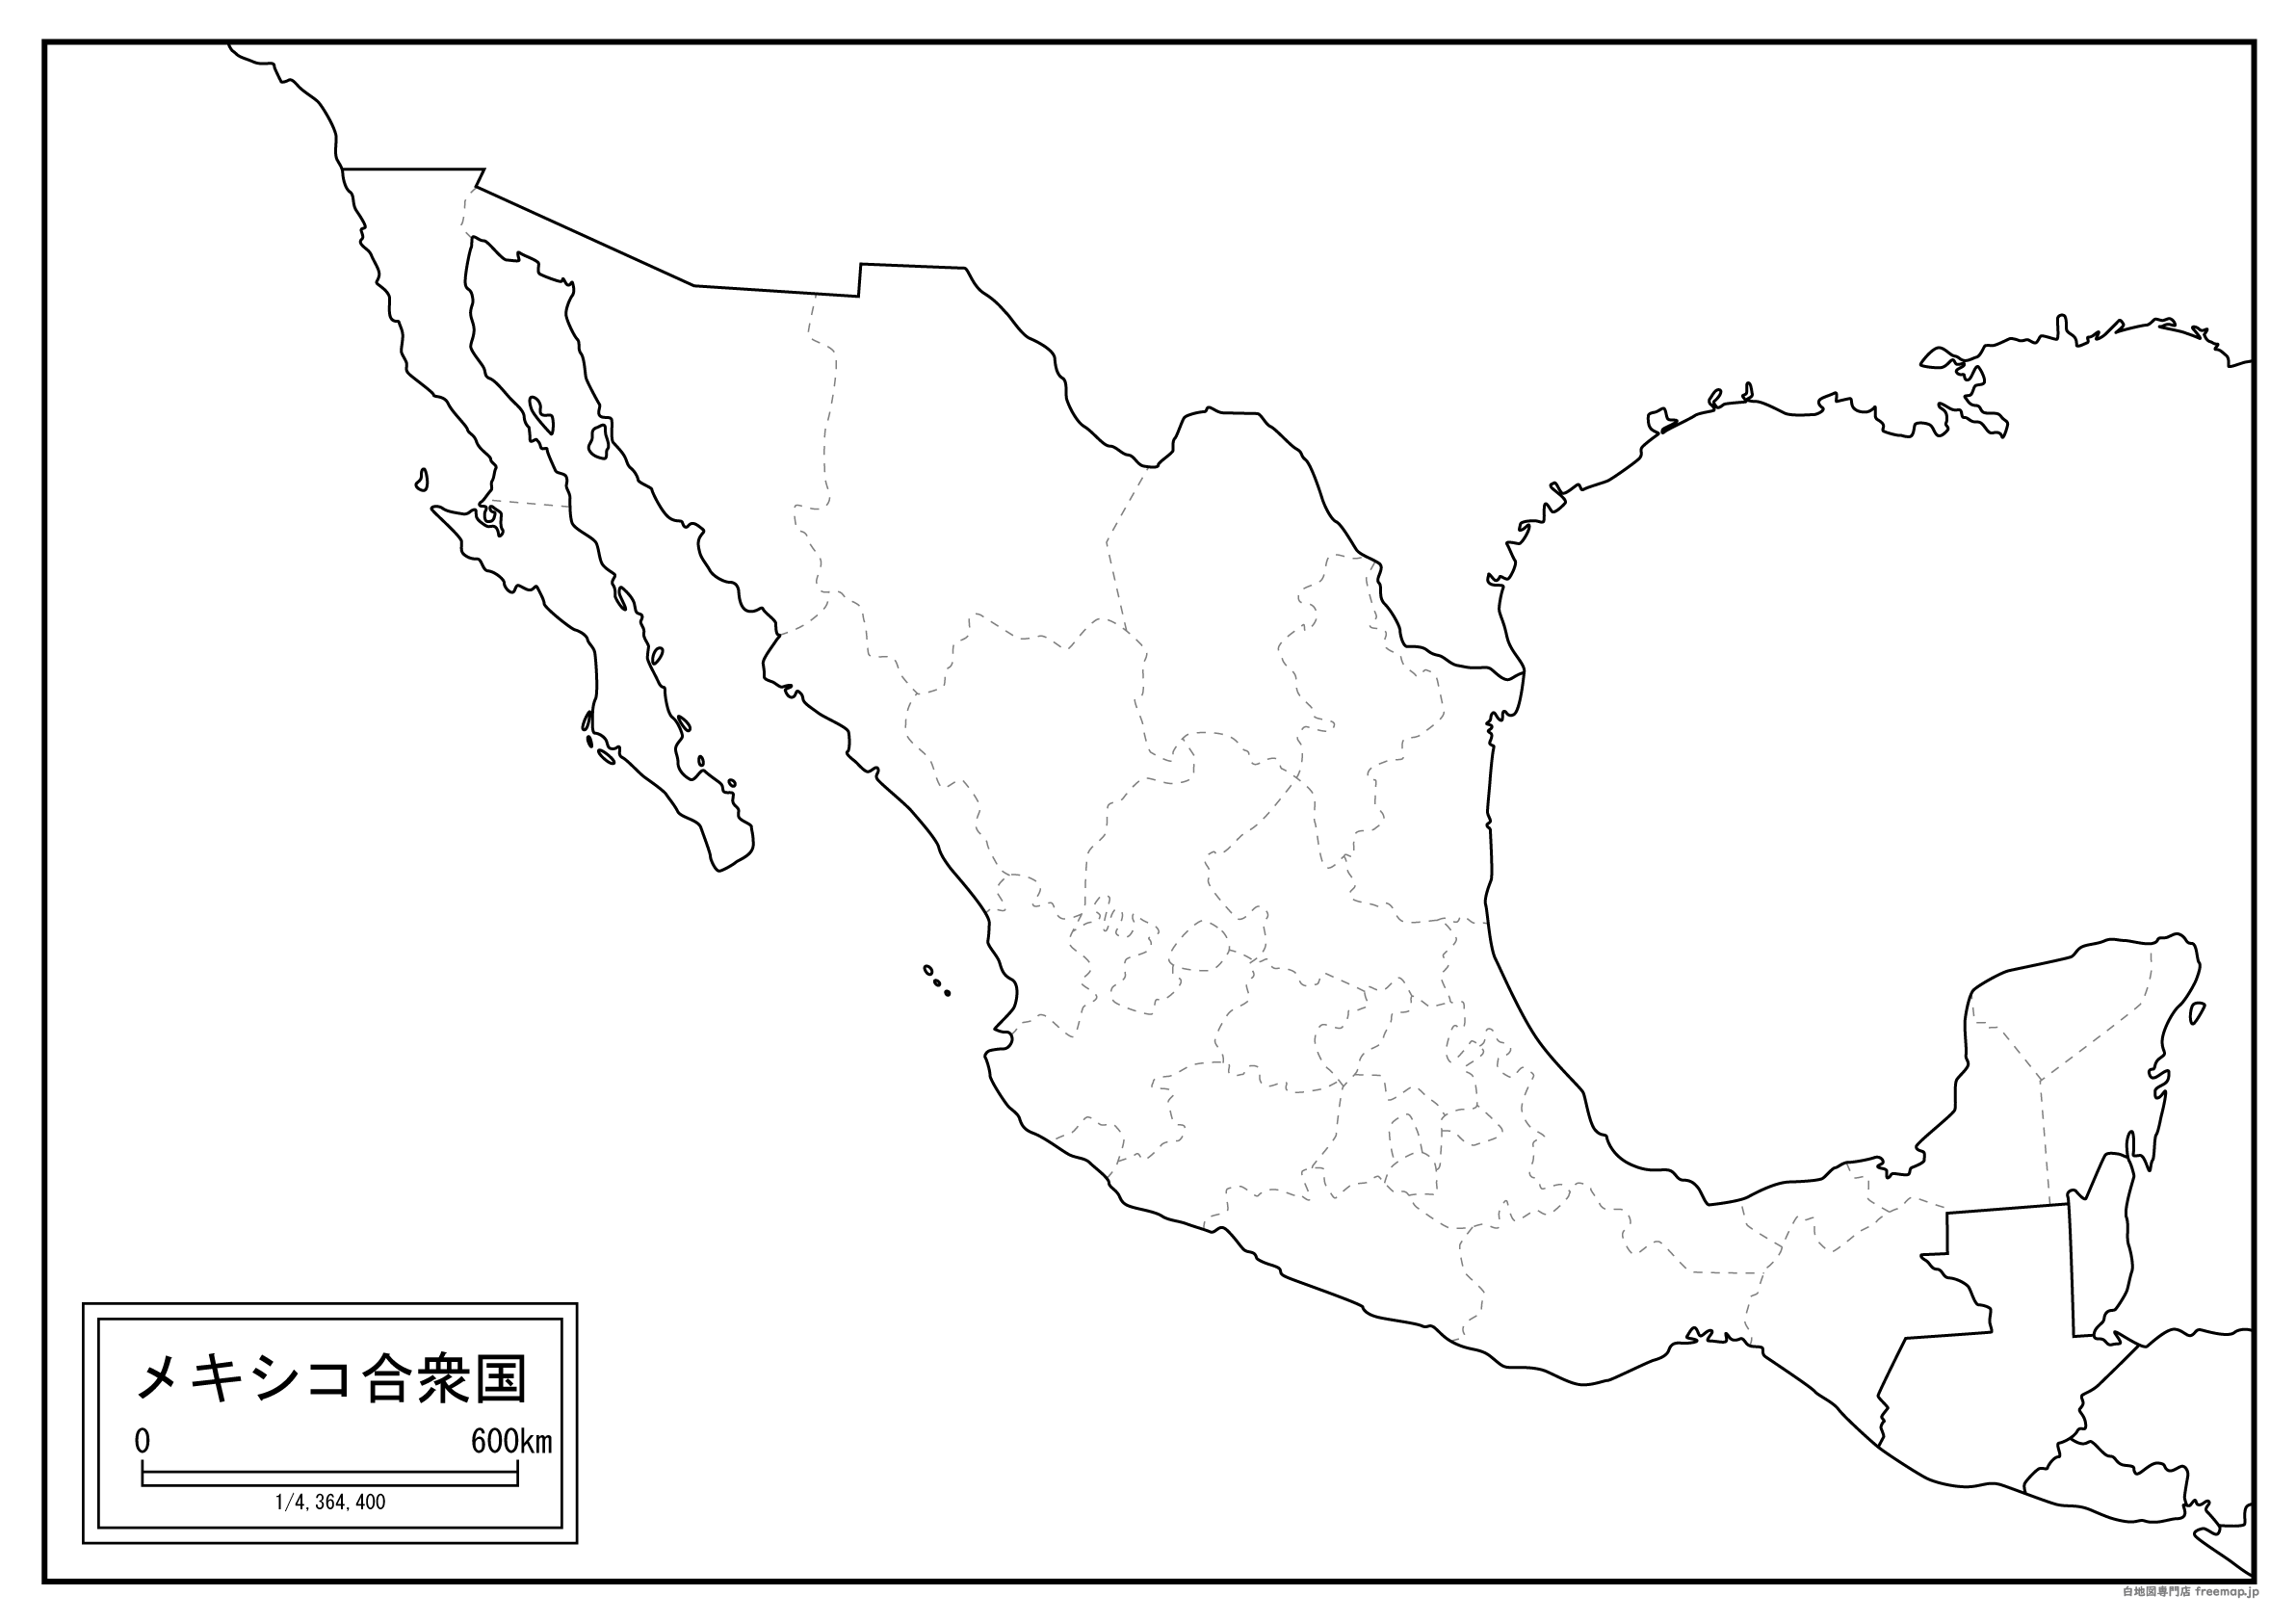 メキシコのサムネイル